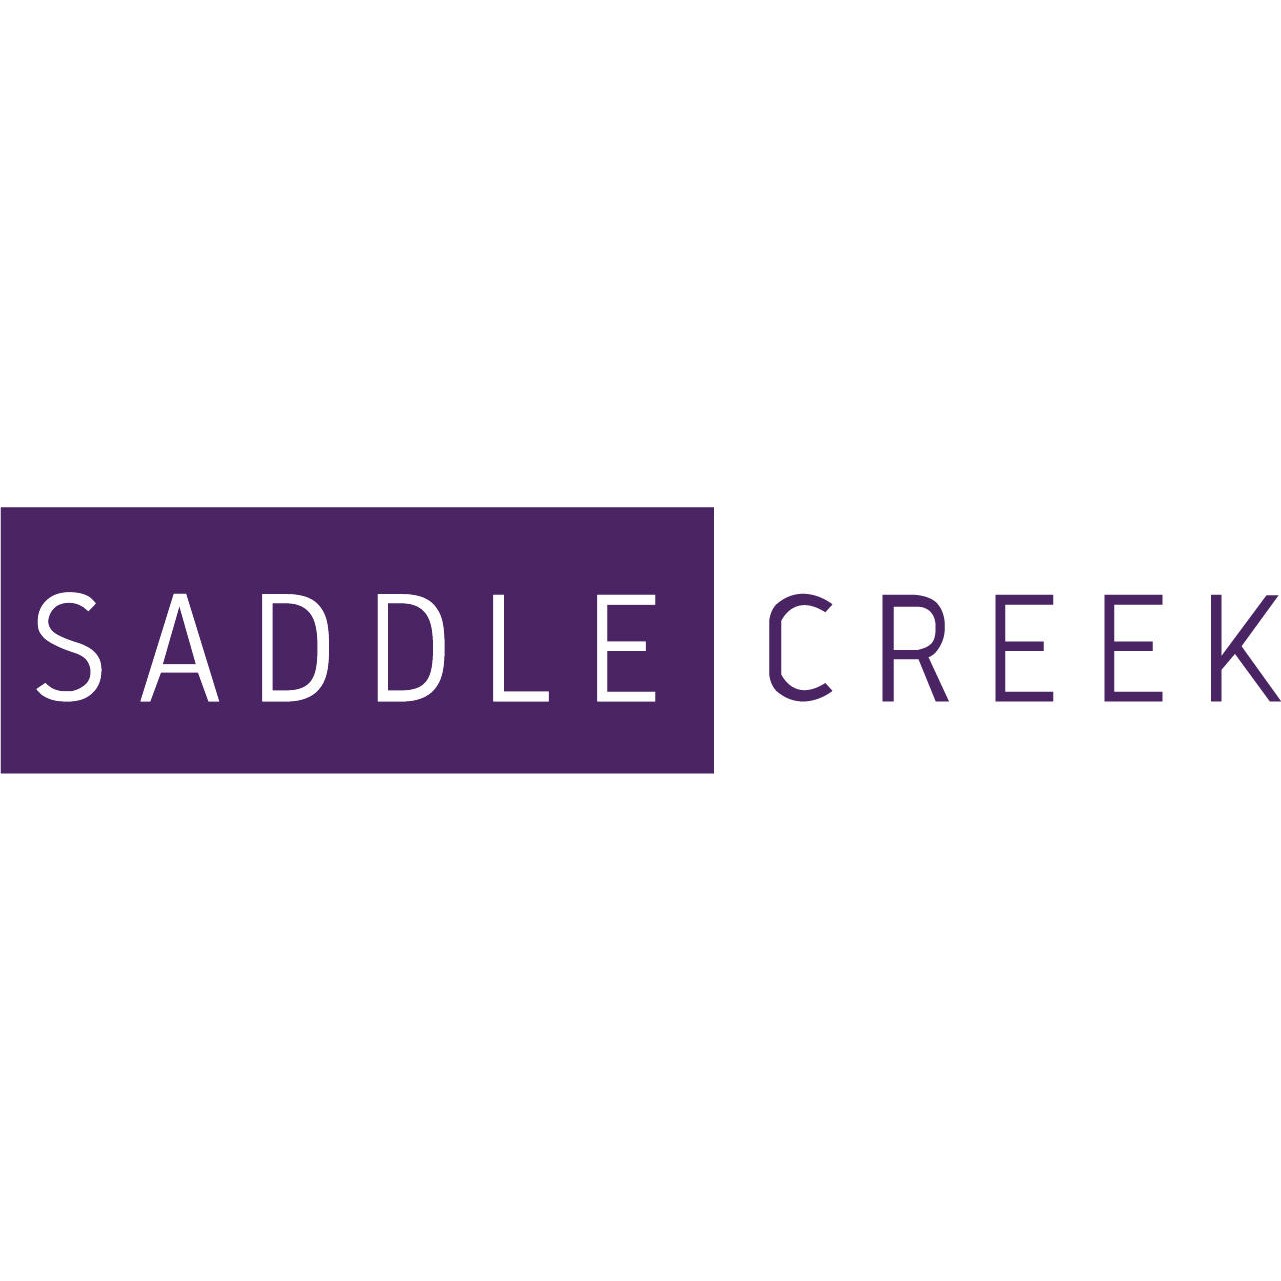 Saddle Creek & The Cove Logo